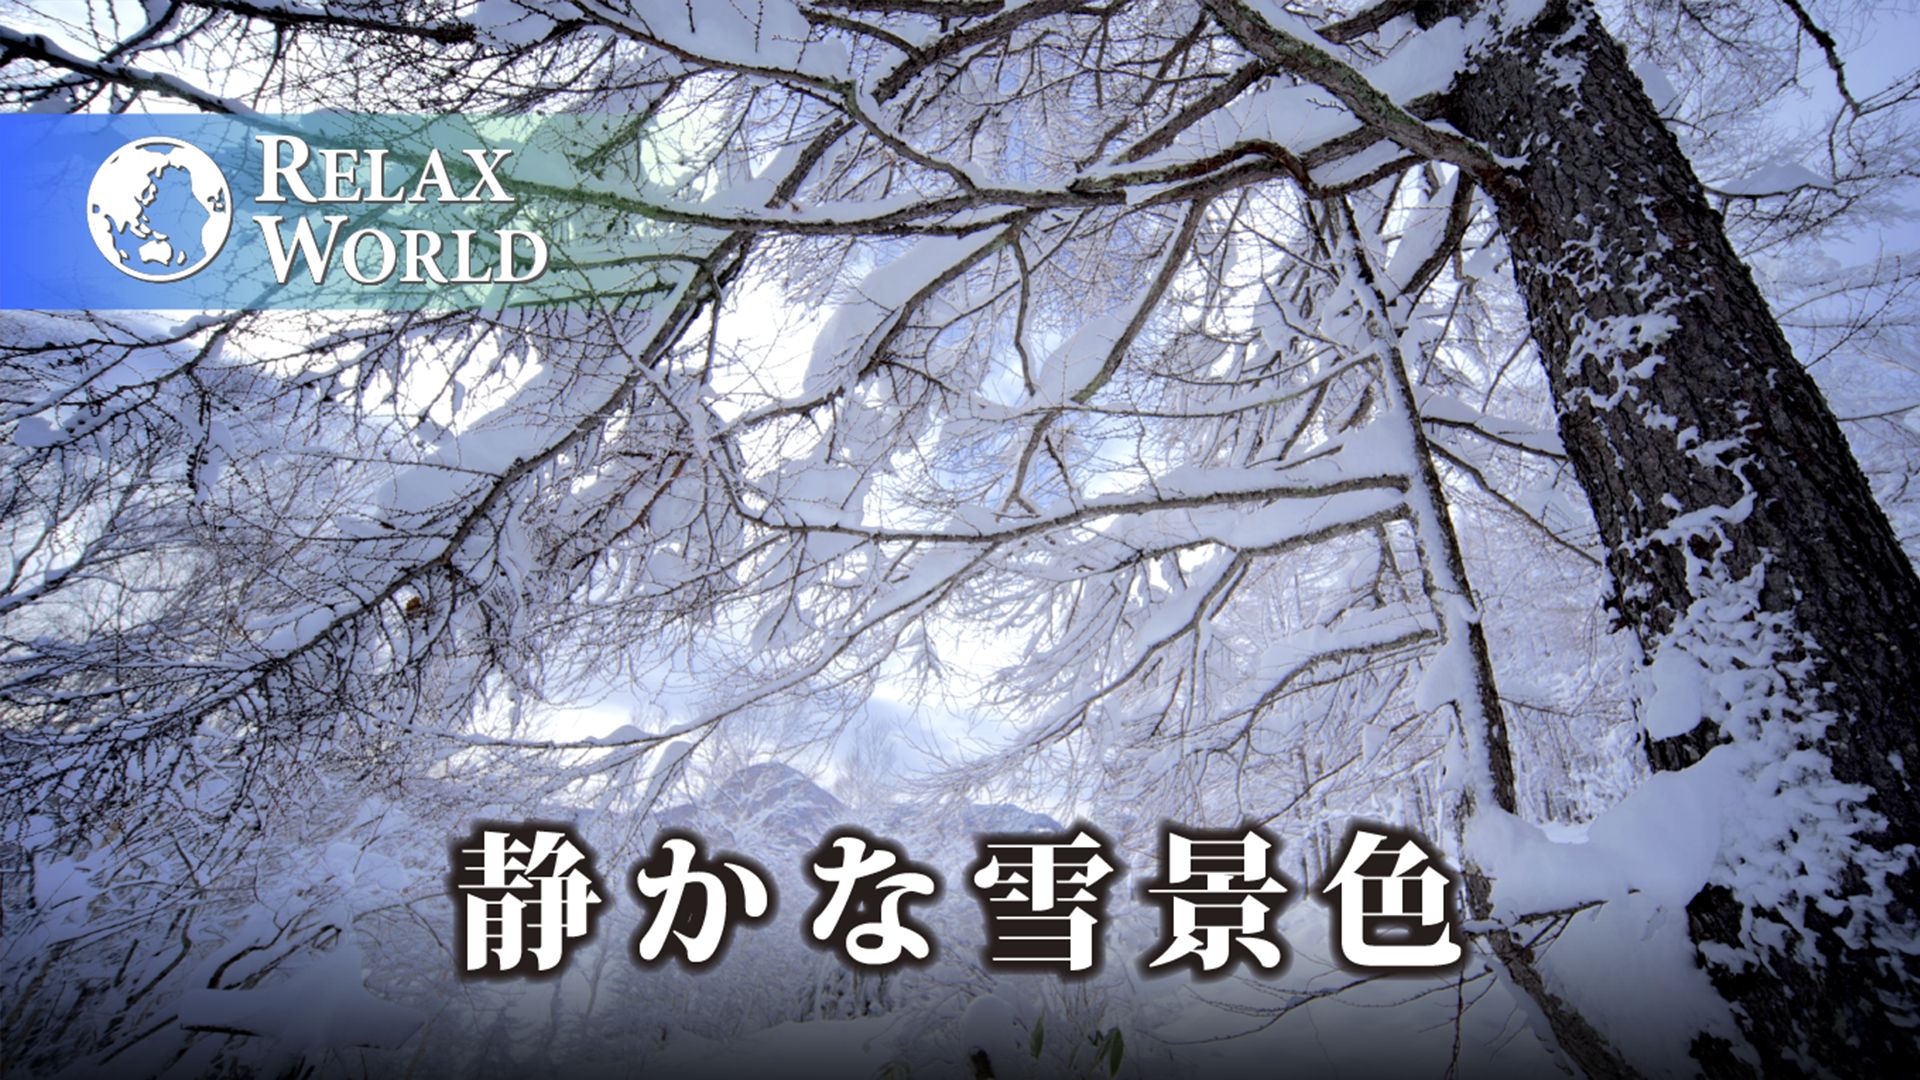 静かな雪景色【RELAX WORLD】